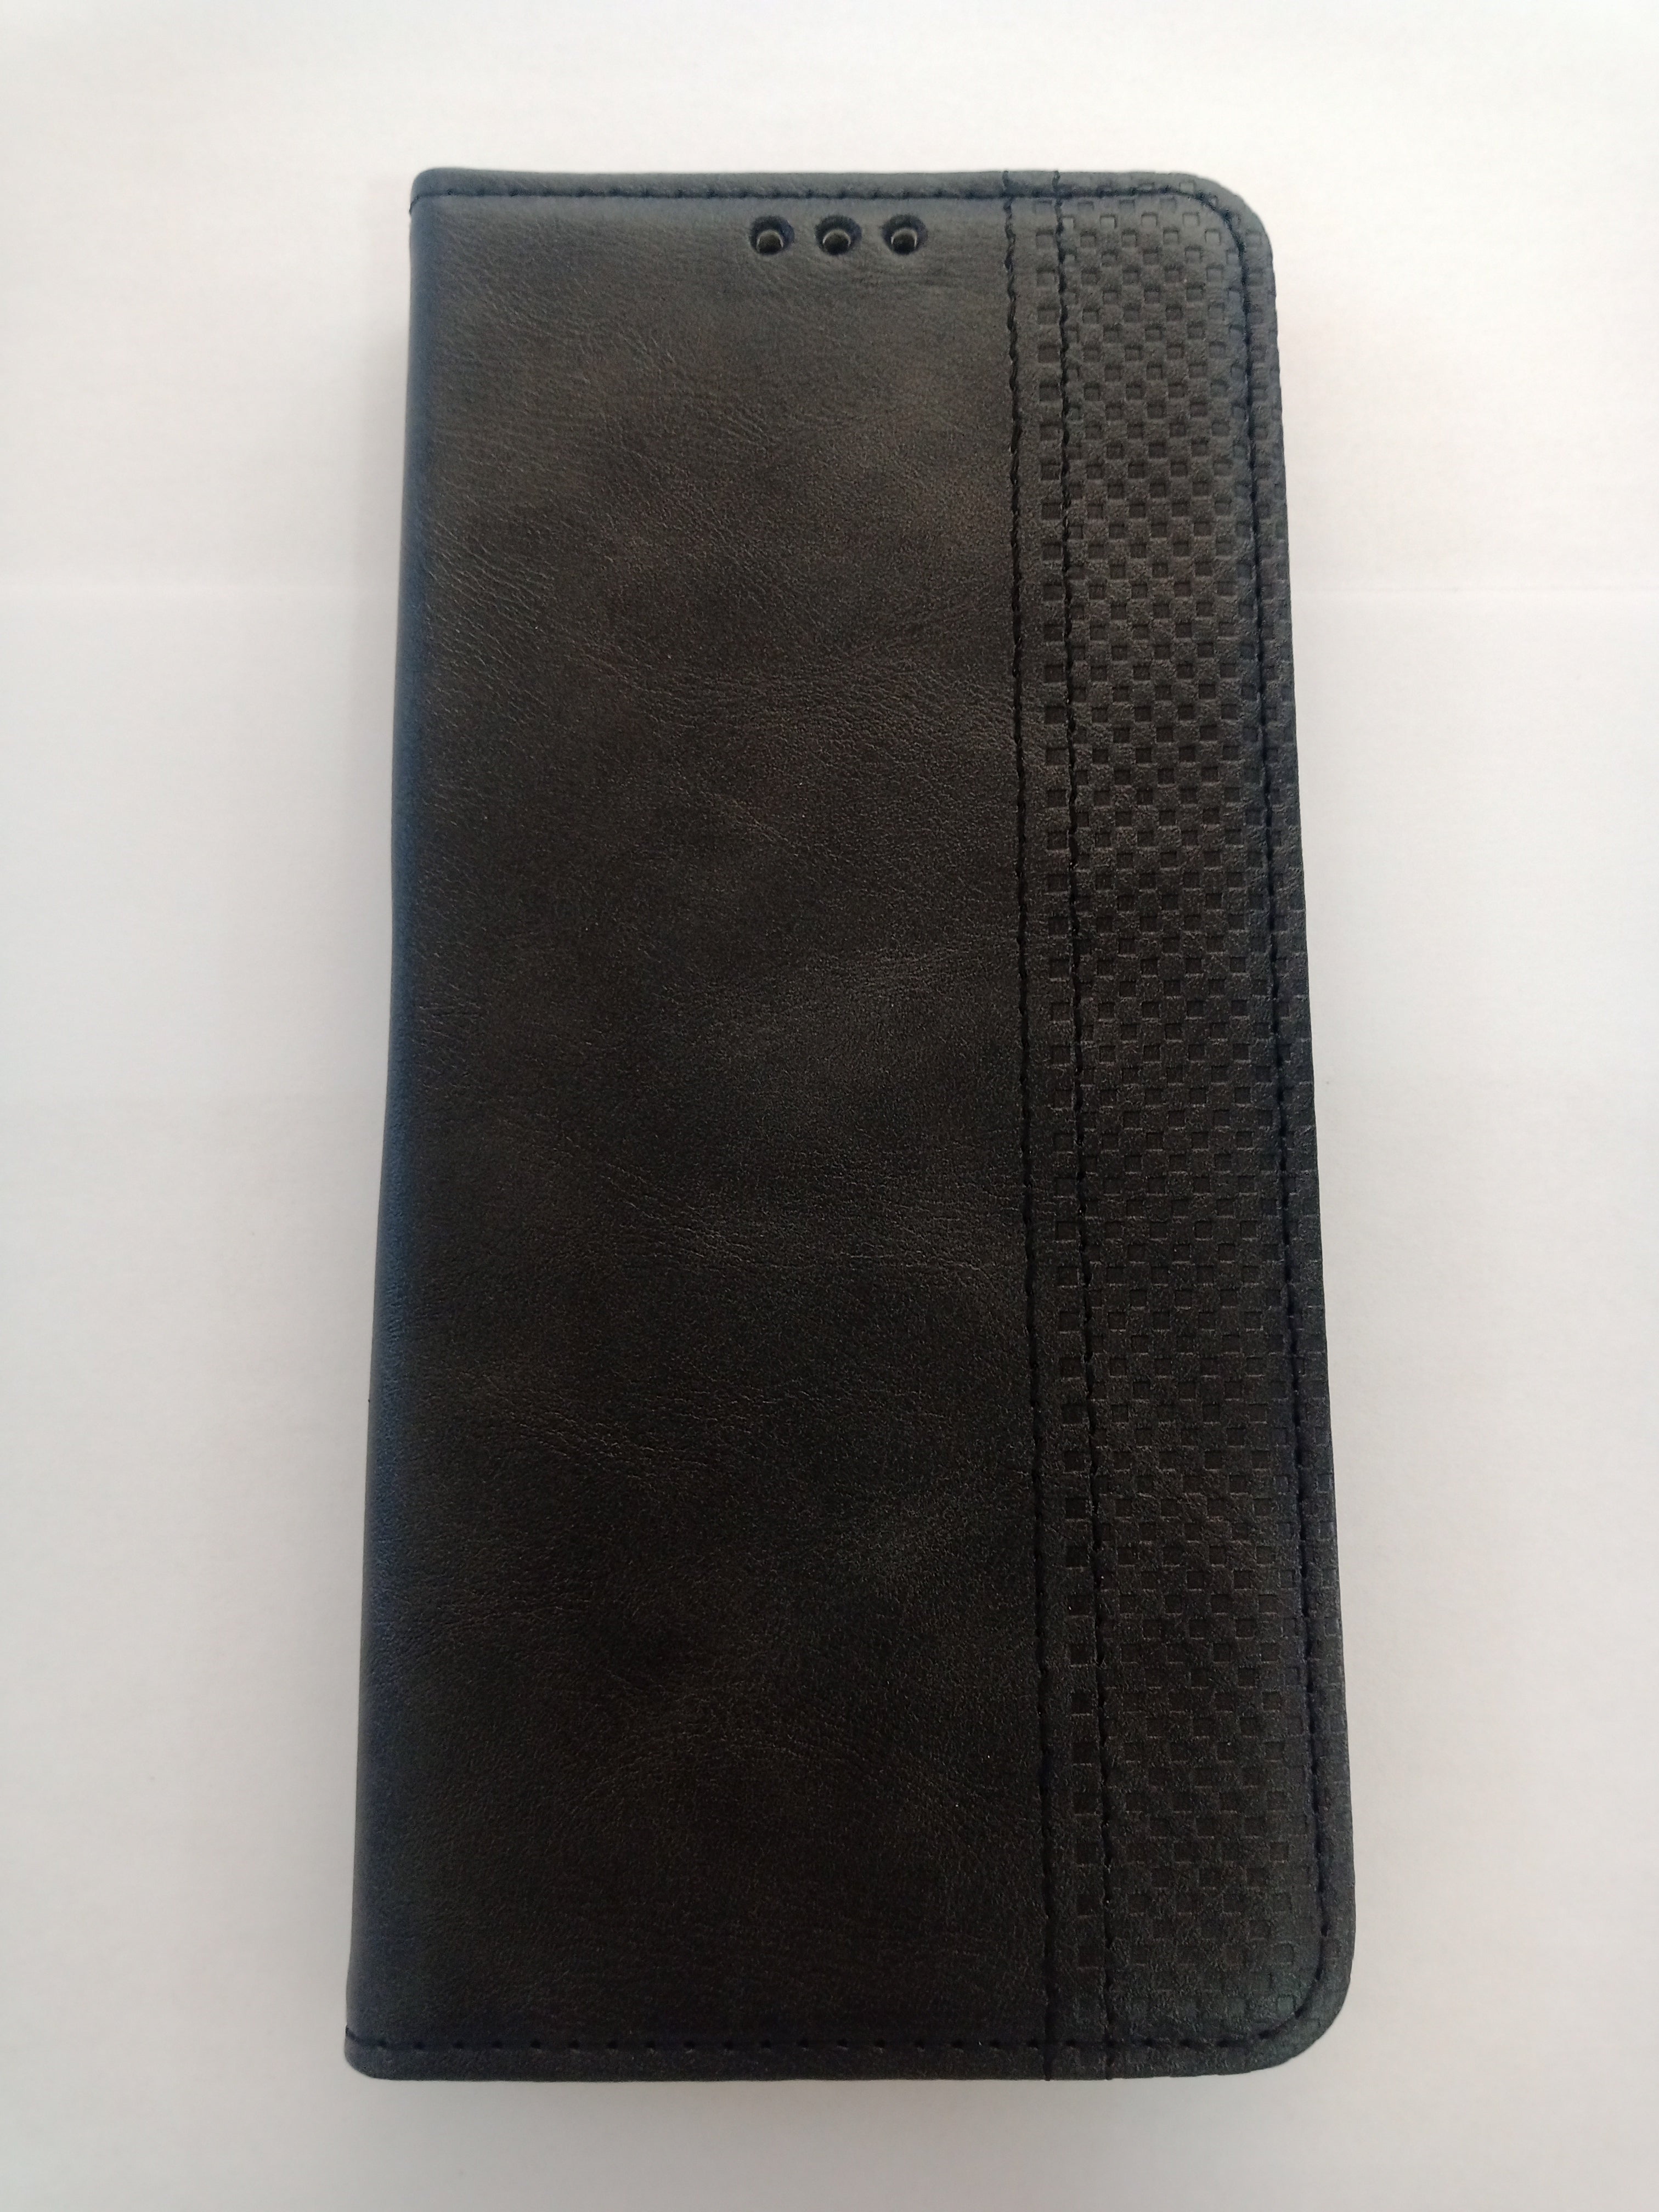 Blackview A70 -Leather Flip Case - Blackview